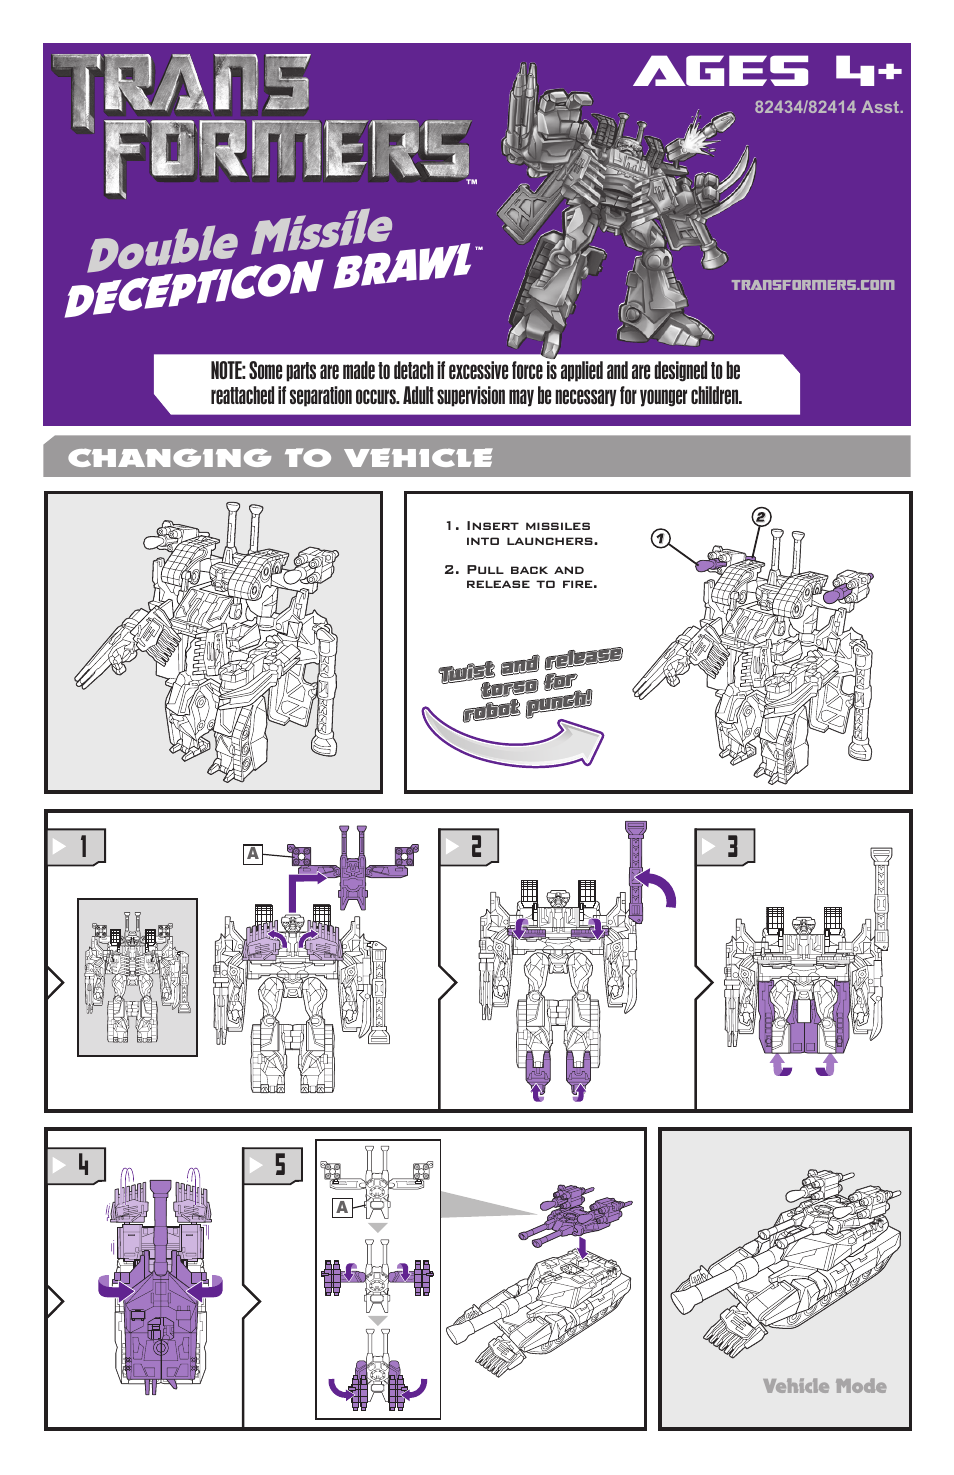 Transformers Double Missile Decepticon Brawl 82434/82414